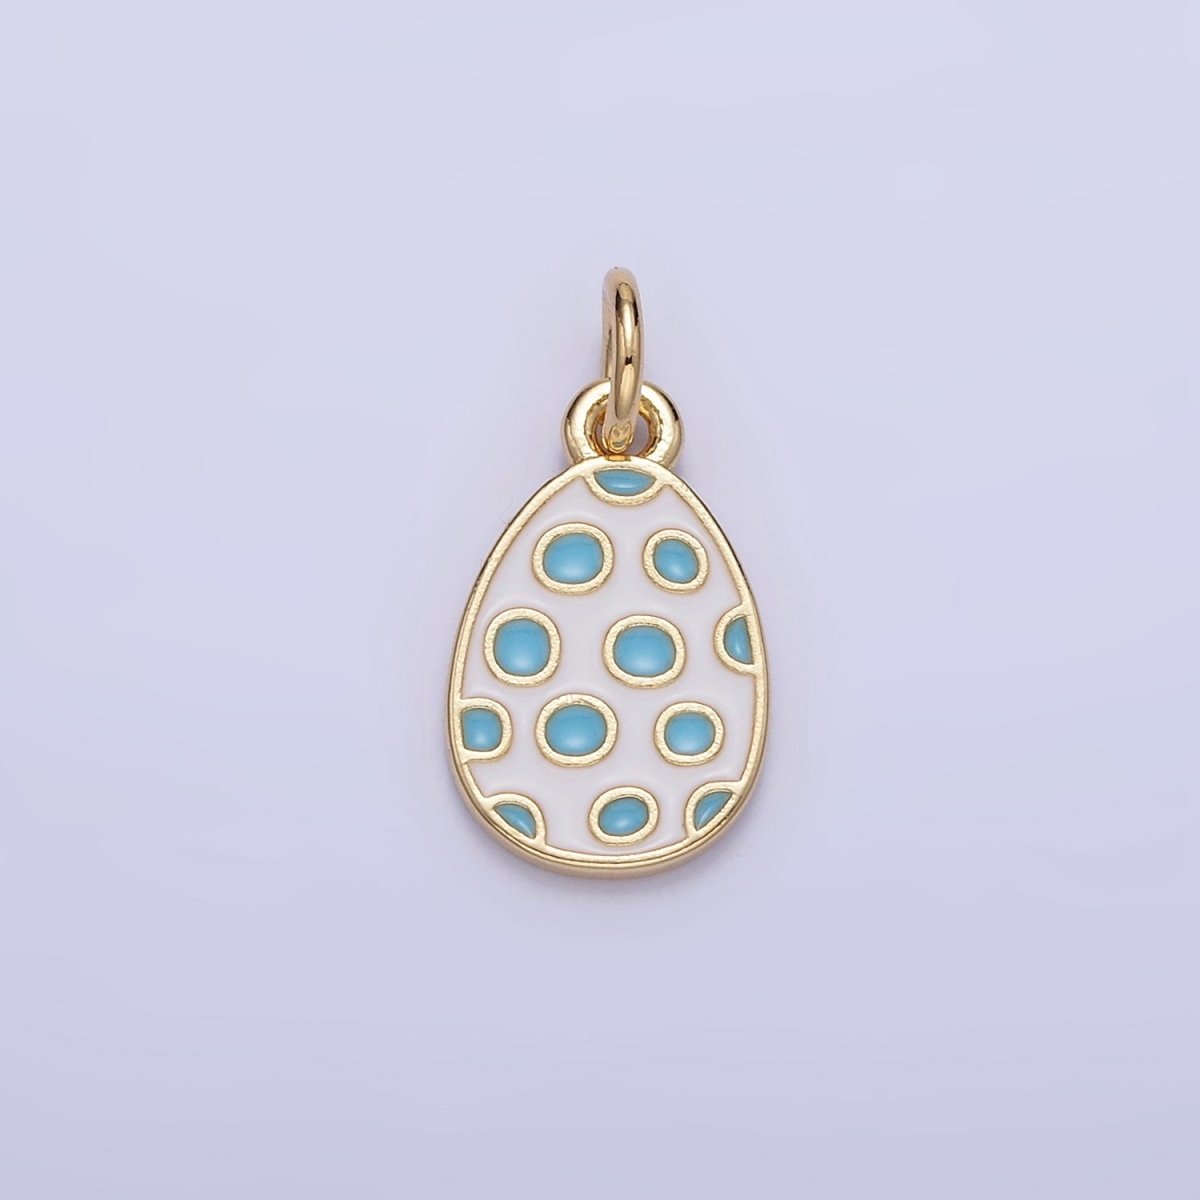 16K Gold Filled Blue Polka Dot White Enamel Easter Egg Charm | C032 - DLUXCA